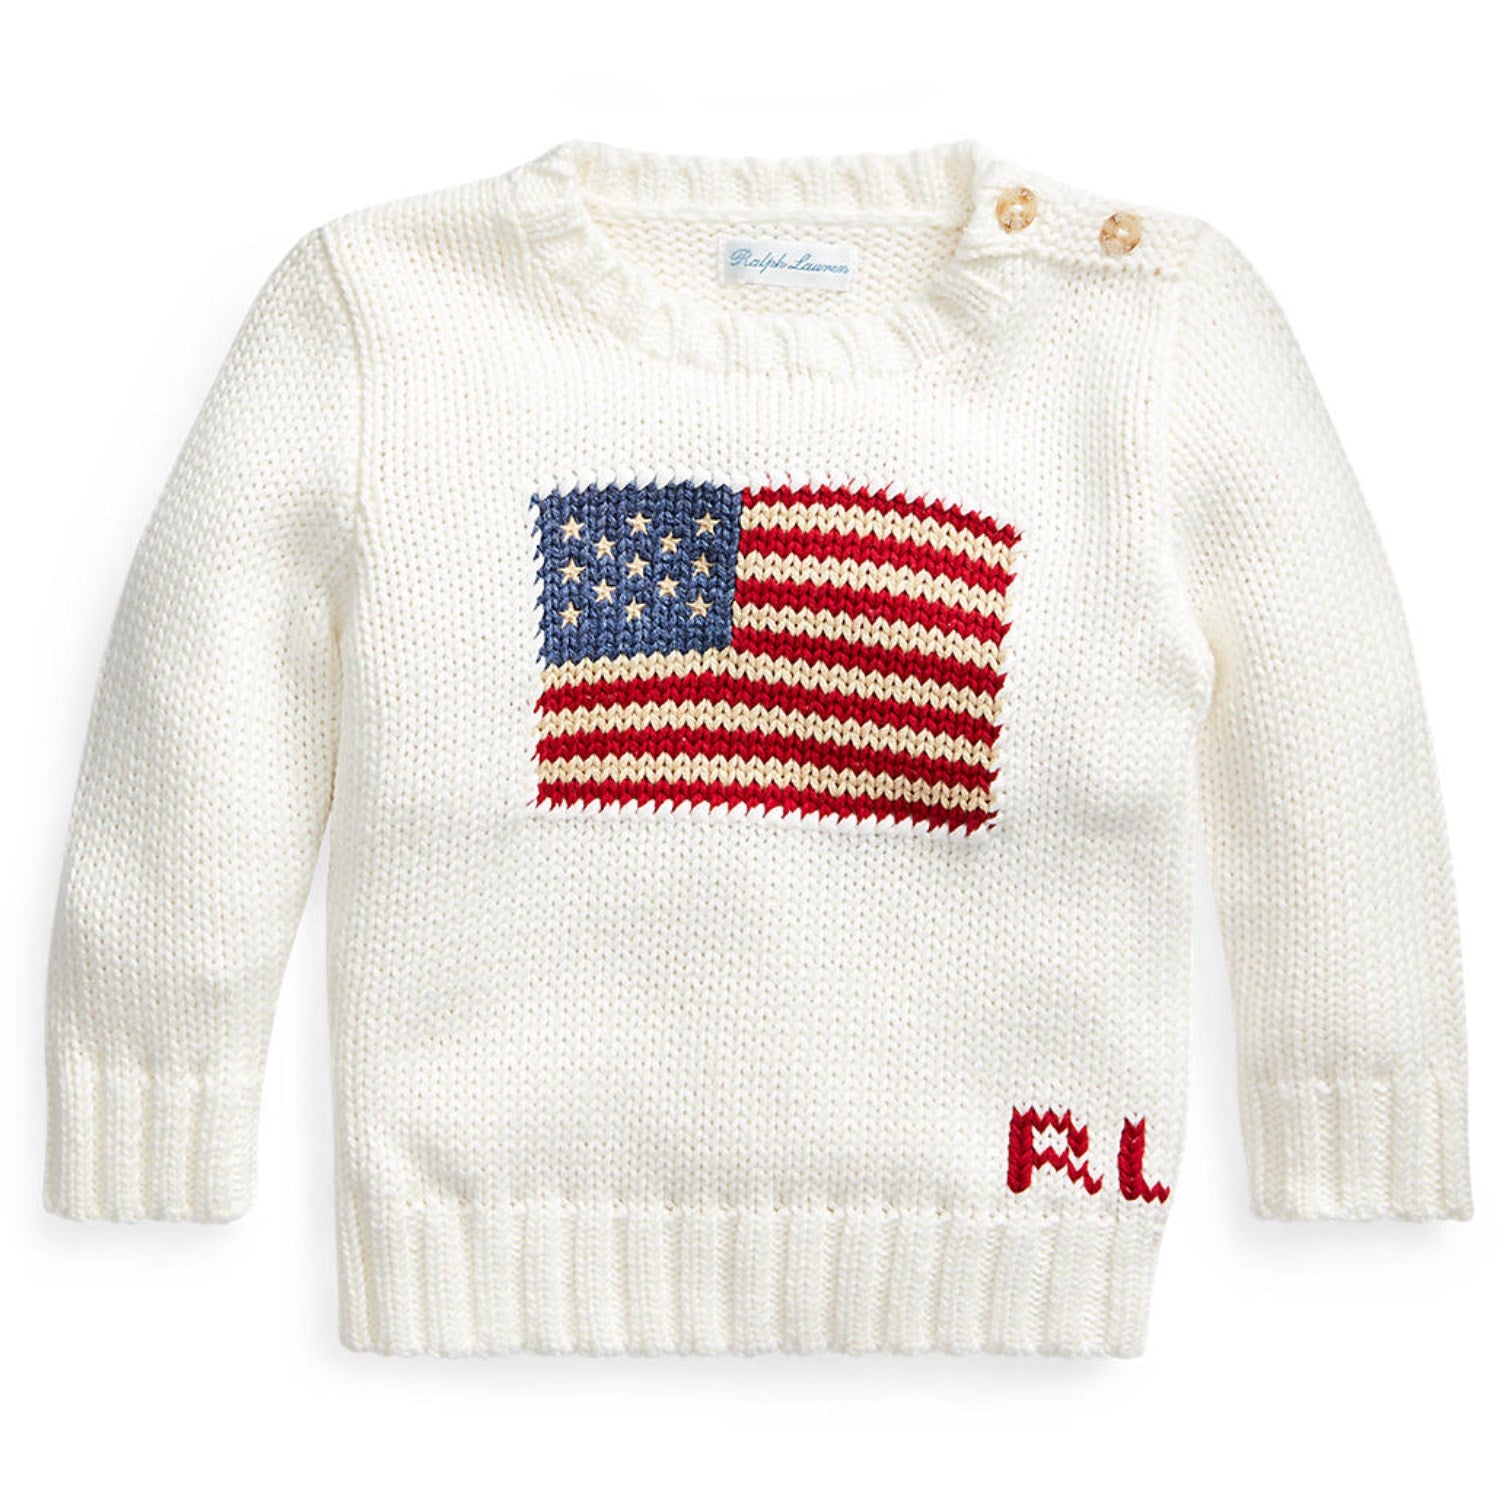 Ralph Lauren Bebis Nevis Sweater